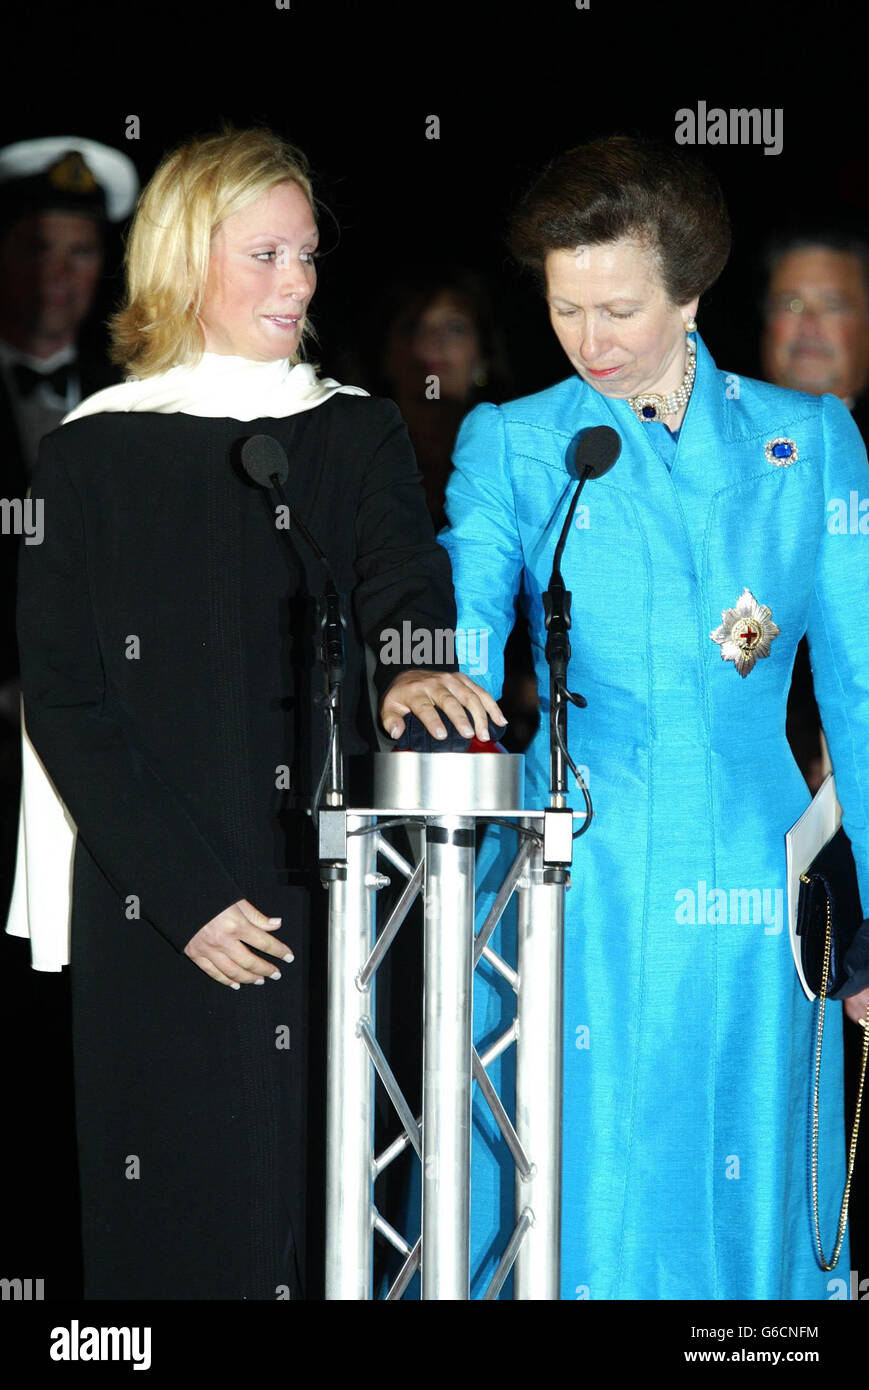 La princesse royale et sa fille Zara Phillips appuient ensemble sur un  bouton pour libérer les deux bouteilles de champagne pour nommer les deux  nouveaux navires Oceana et Adonia de P&O sur